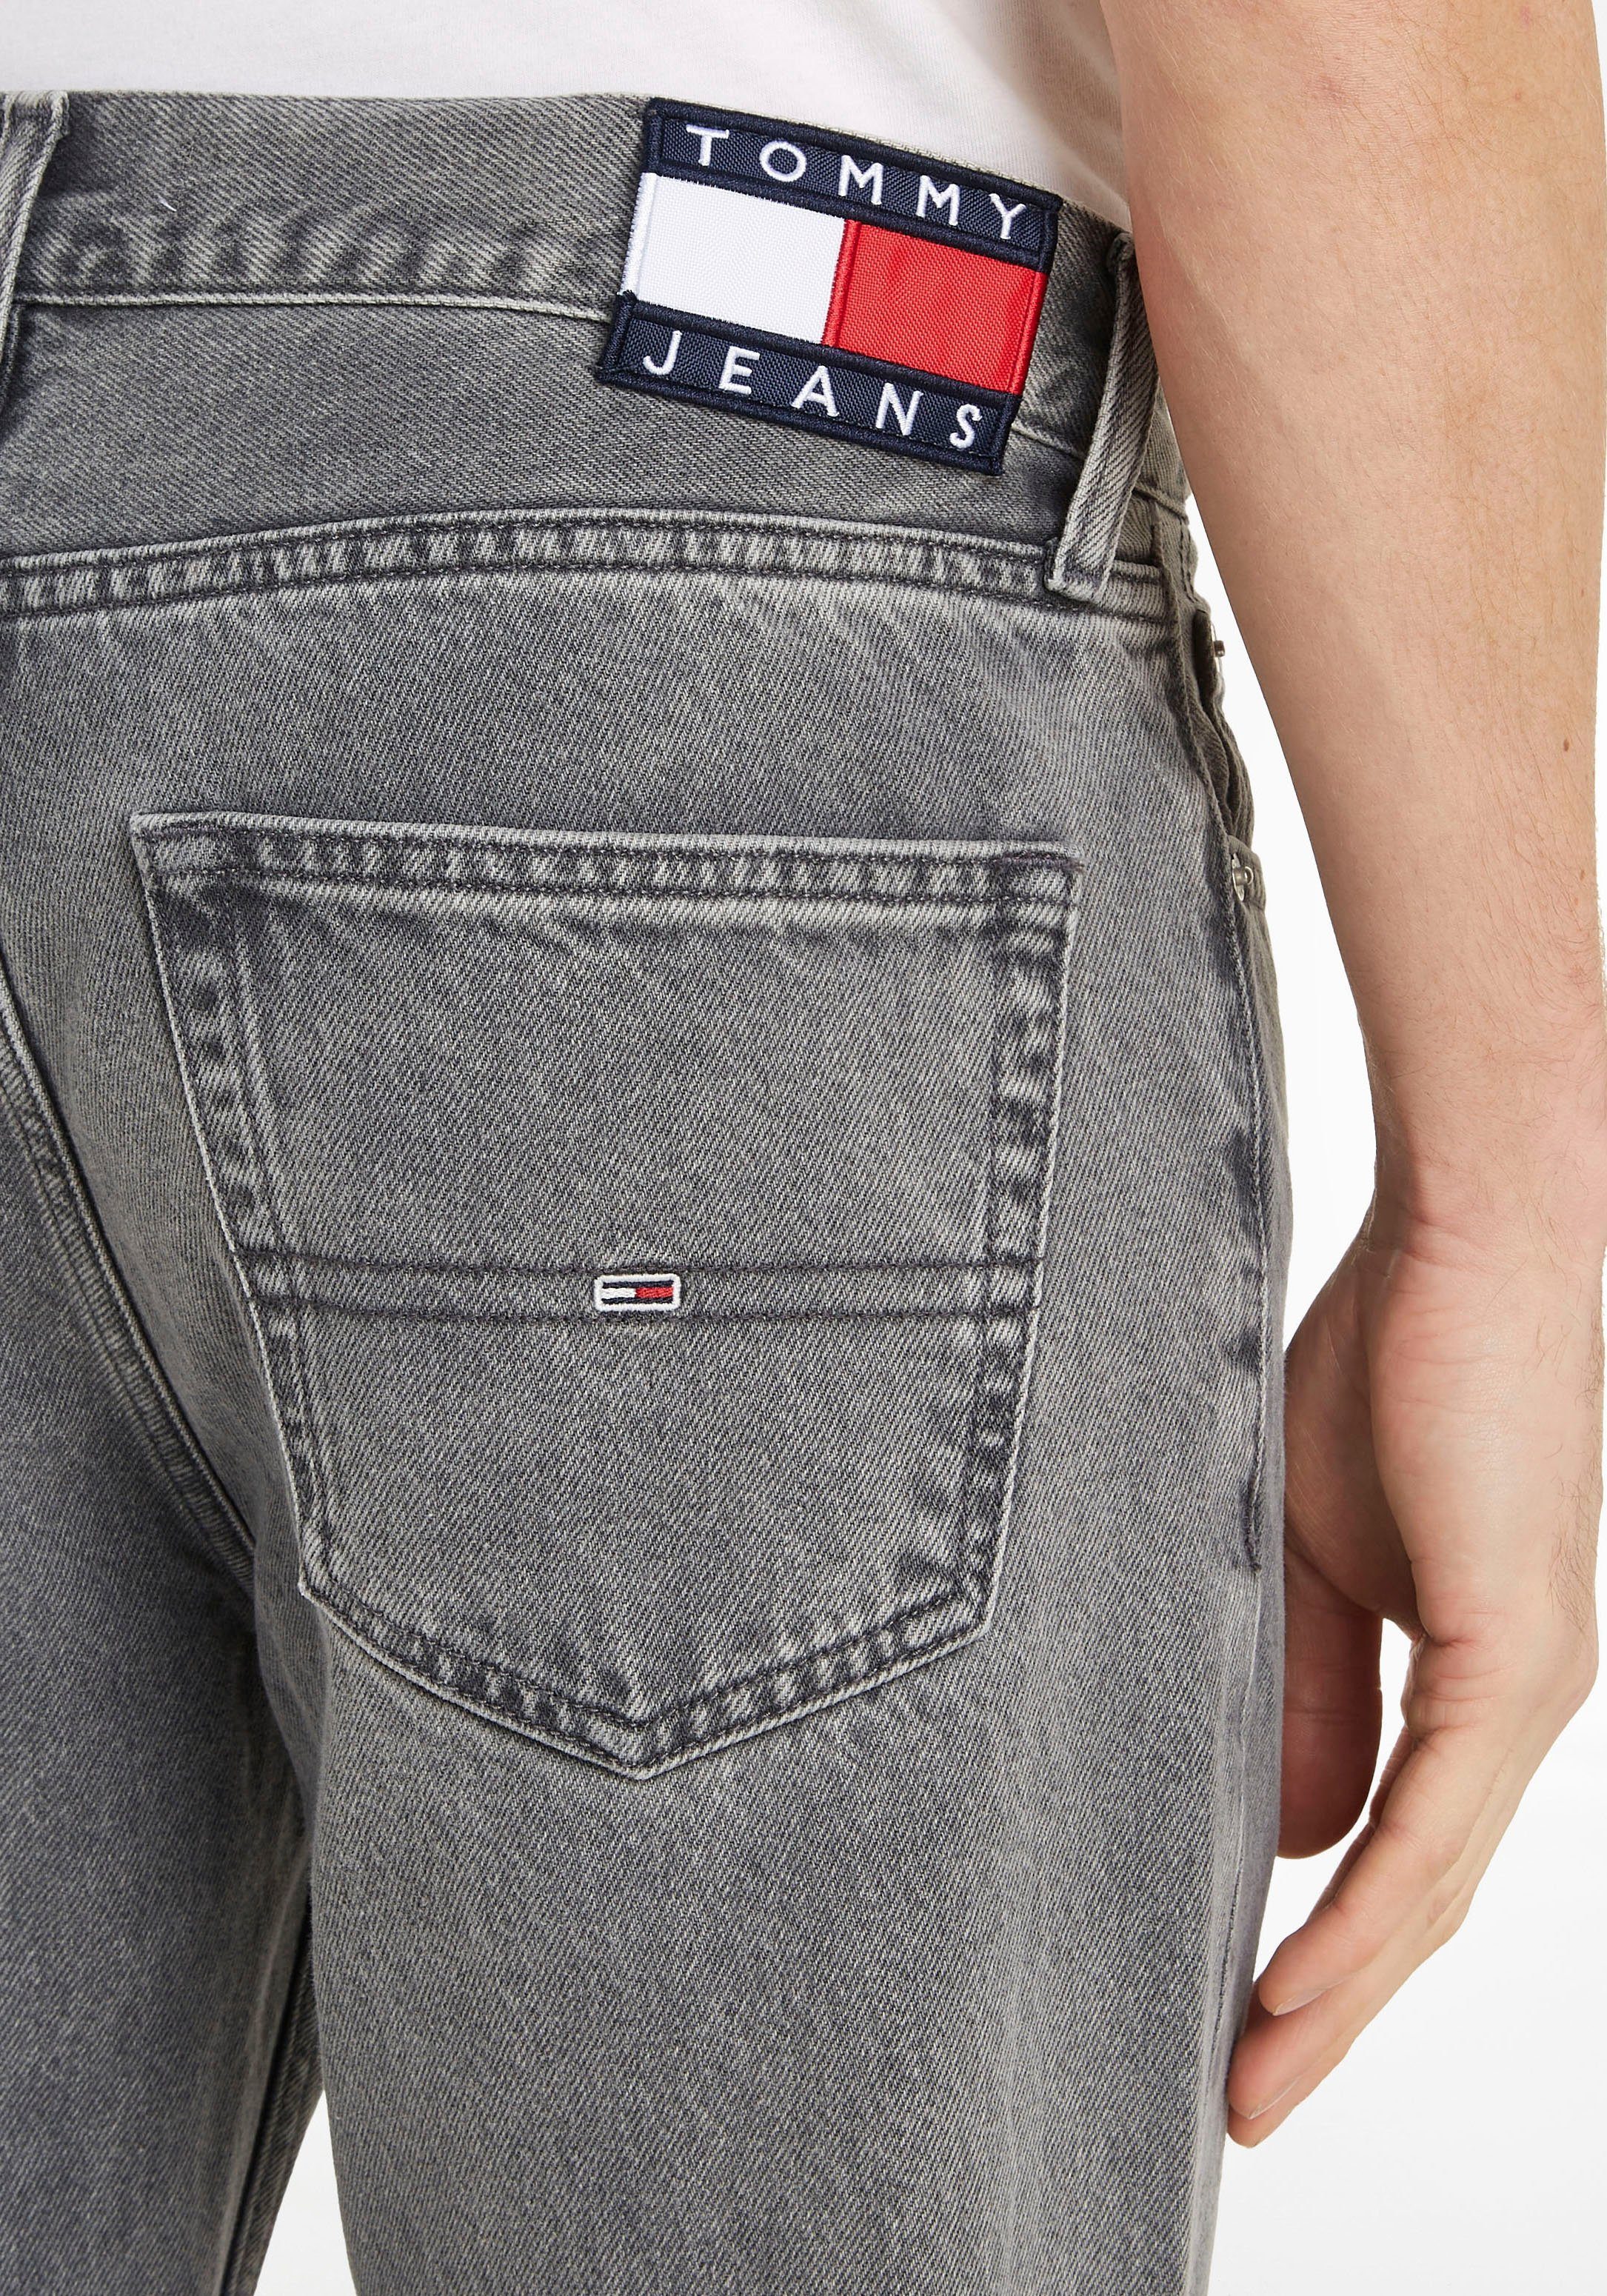 Tommy RGLR 5-Pocket-Jeans Jeans denim TPRD black DAD JEAN